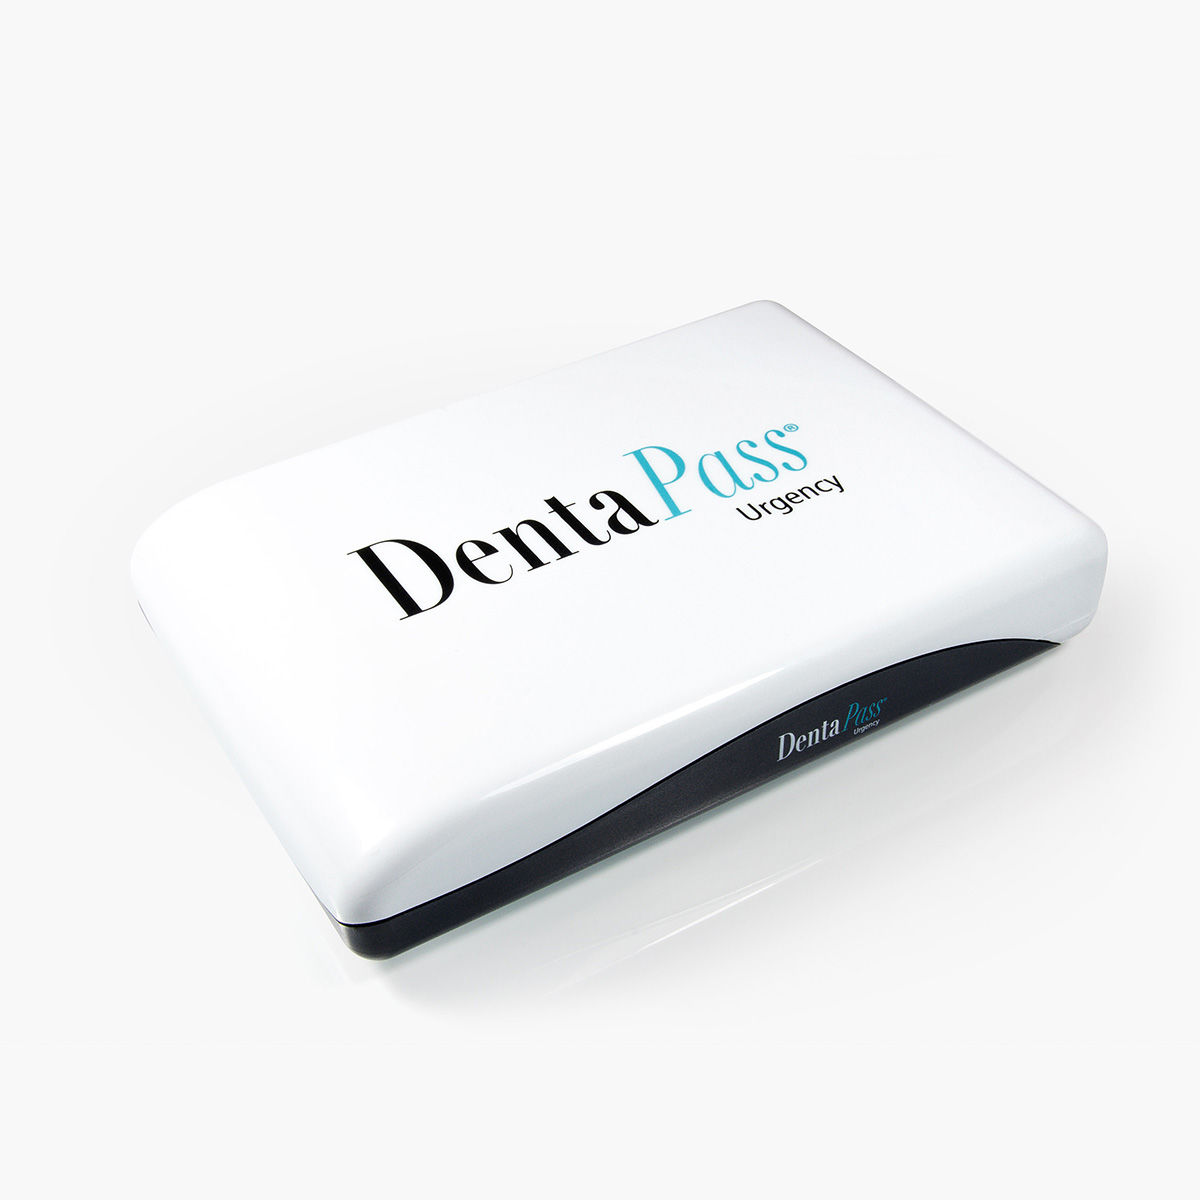 DentaPass dental emergency kit